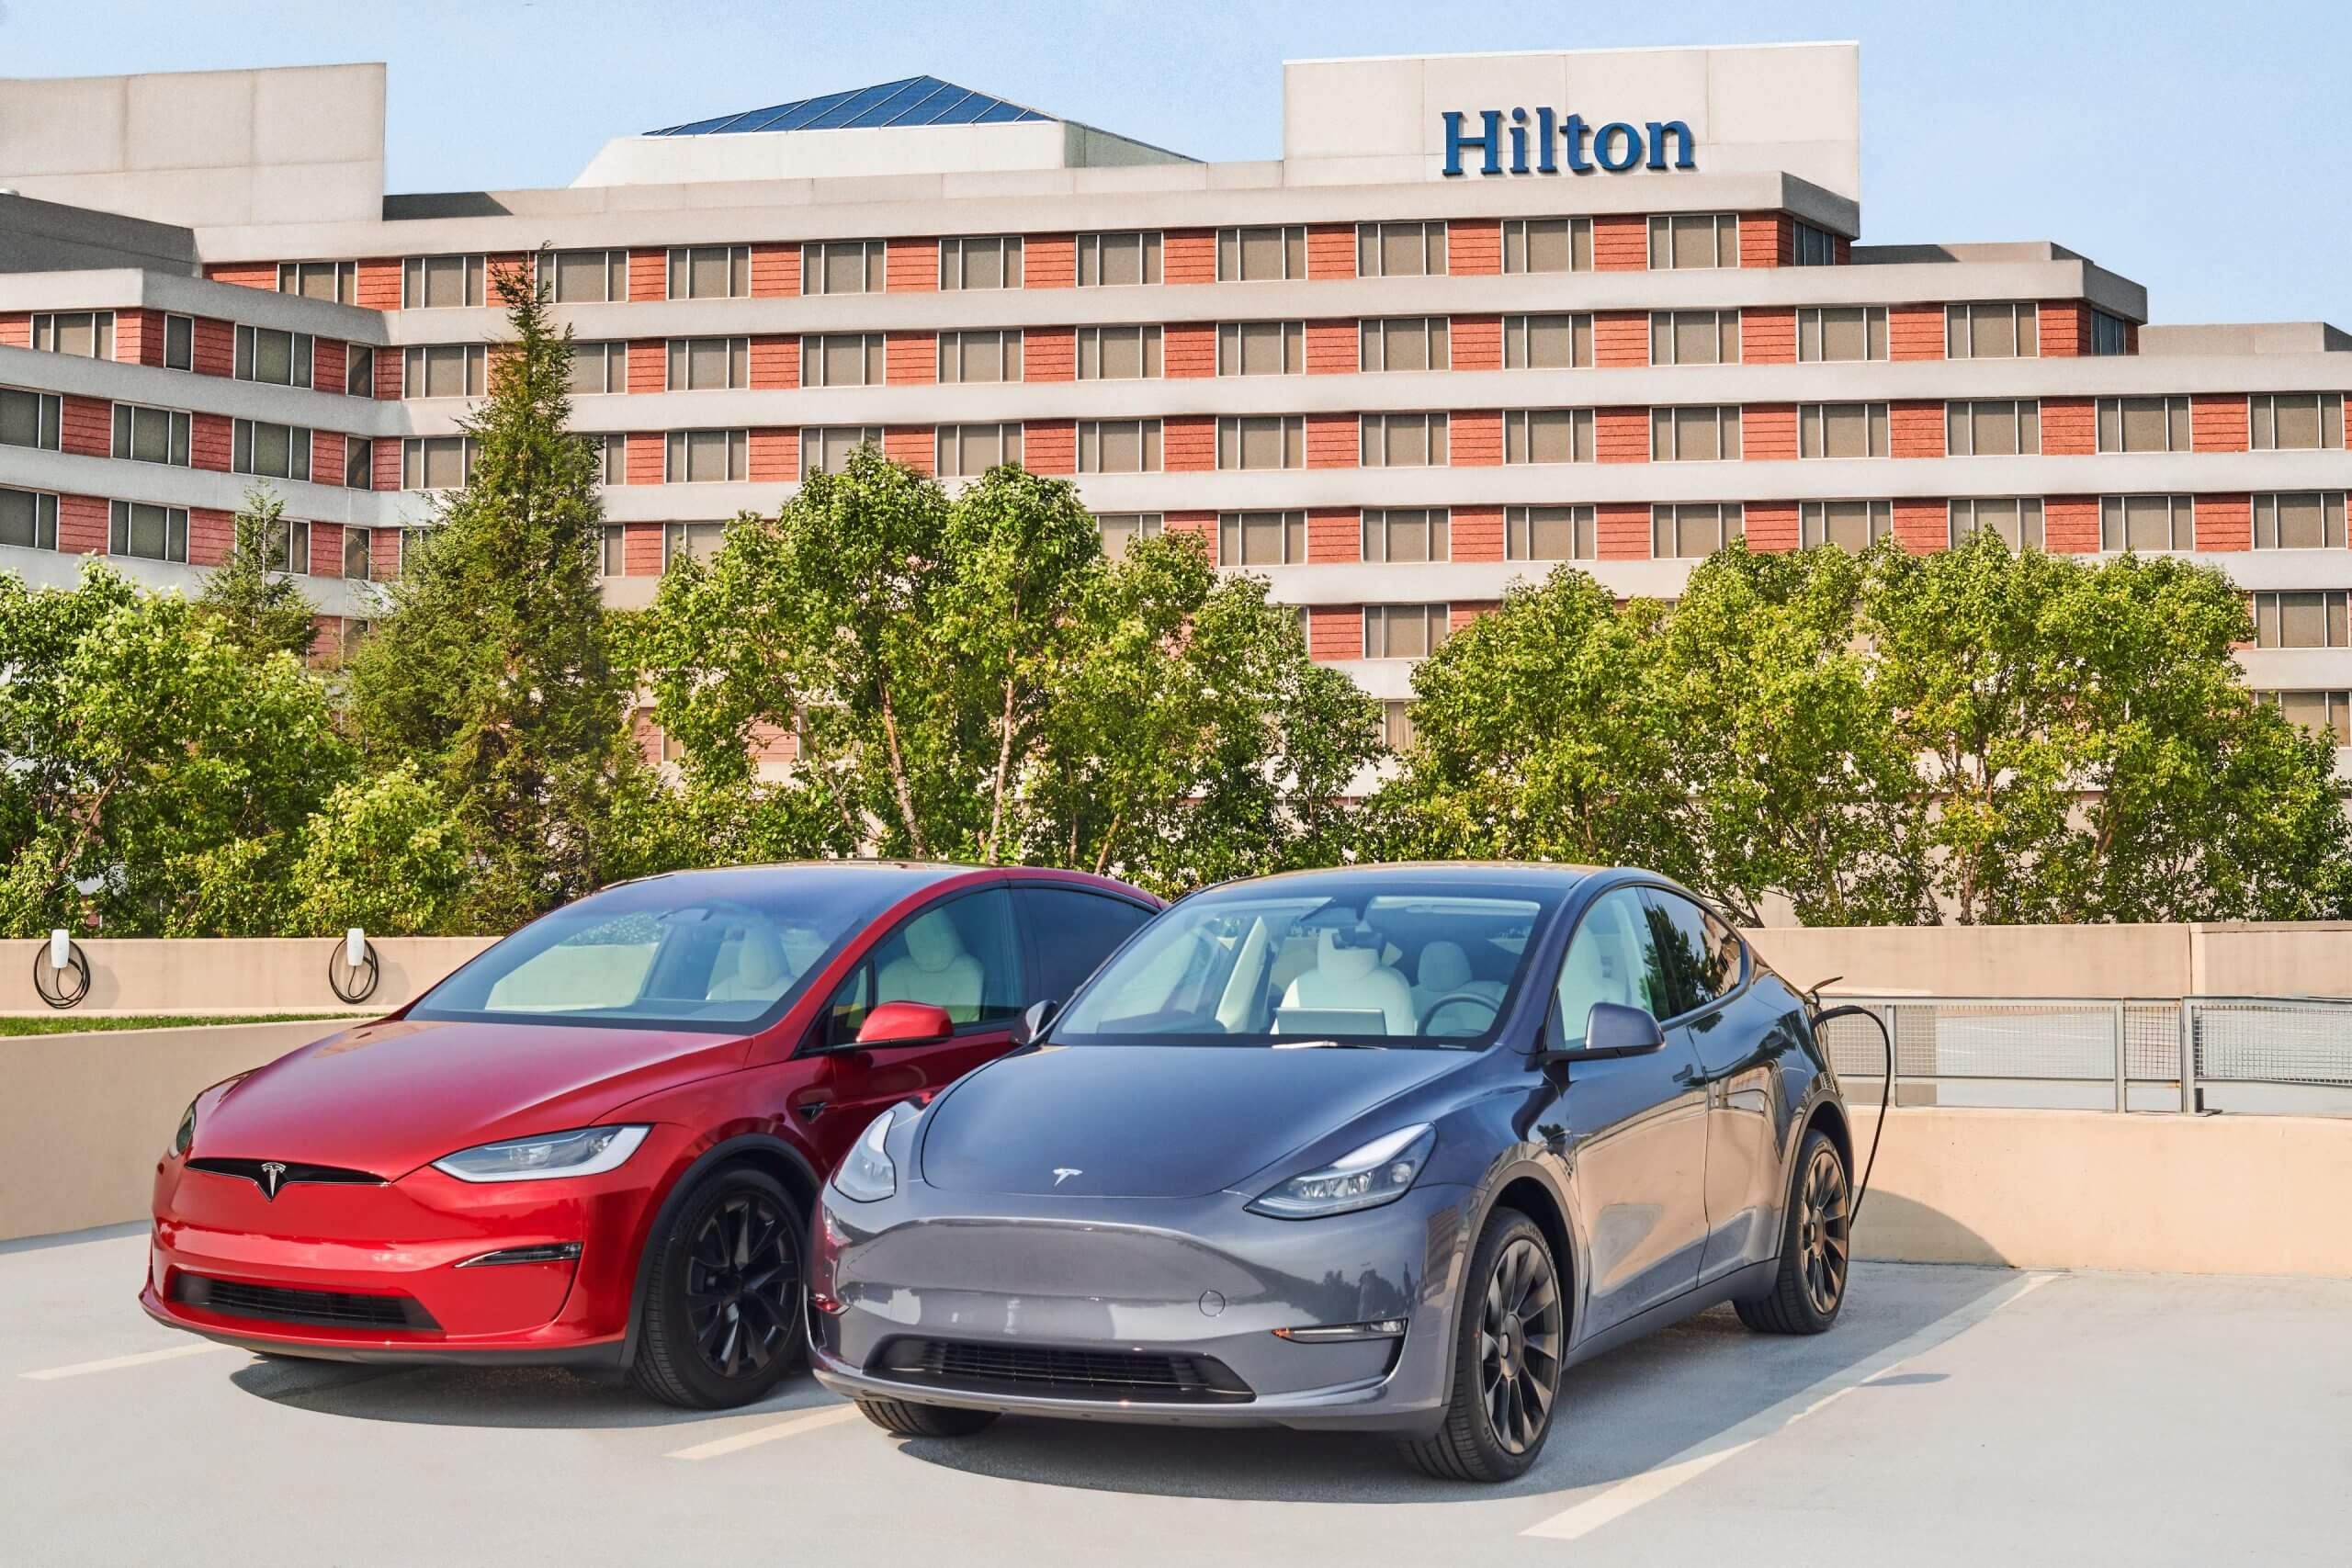 2000 个希尔顿酒店地点将安装多达 20k 个 Tesla 通用墙壁连接器